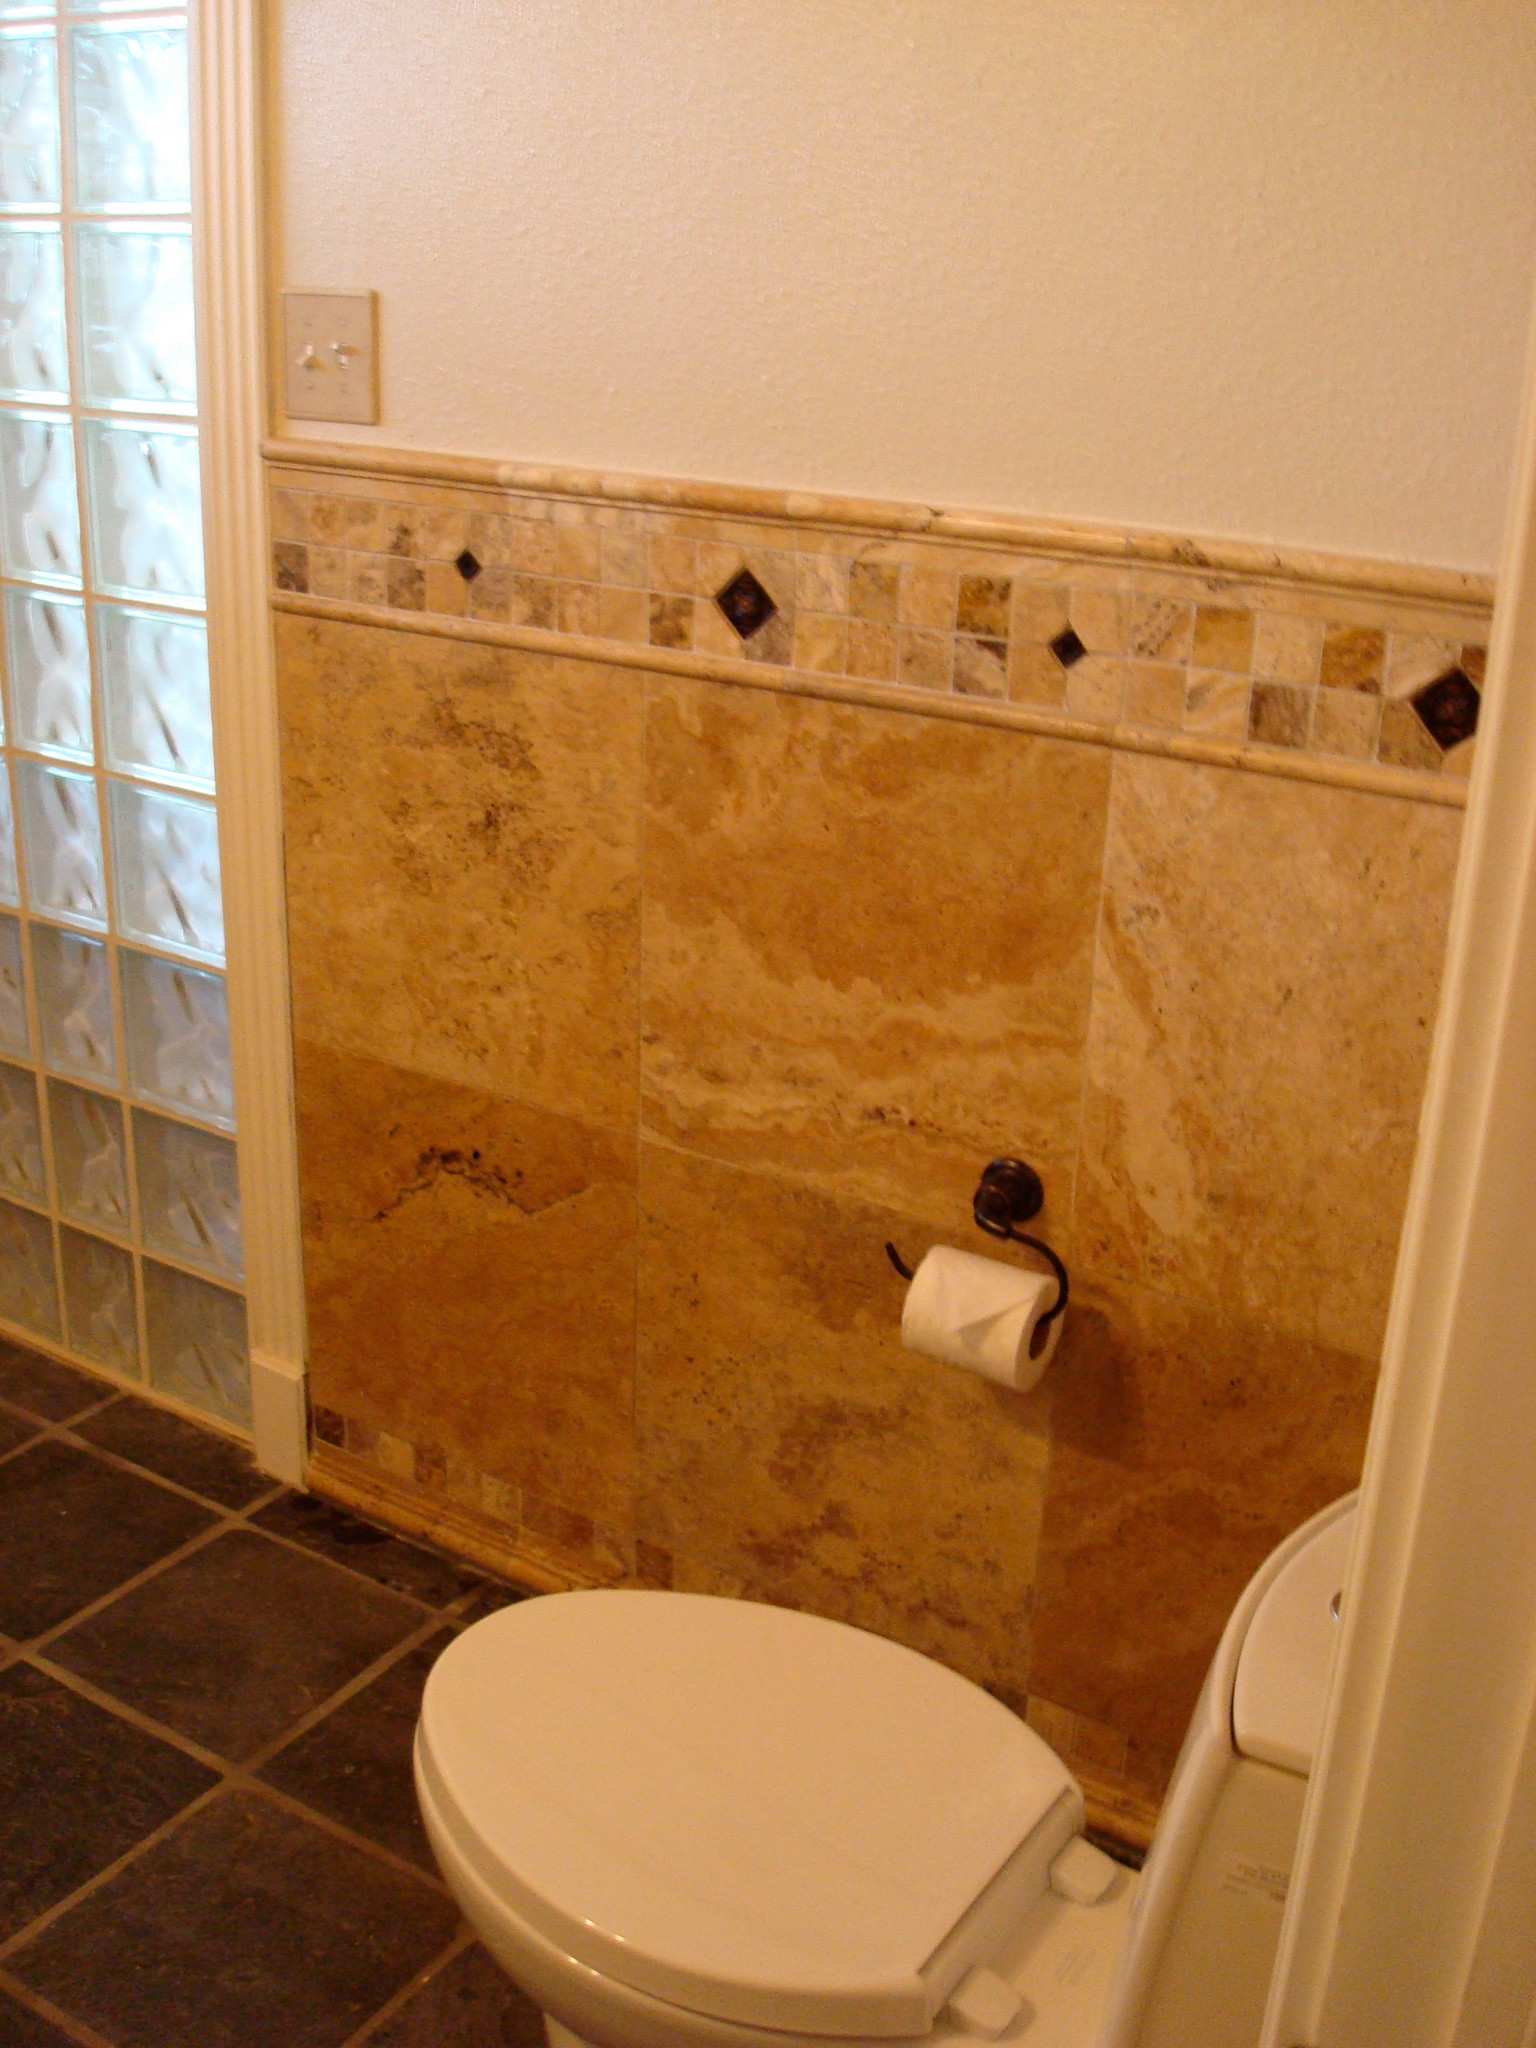 Tiimbercreek Court - 1/2 Bathroom Remodel